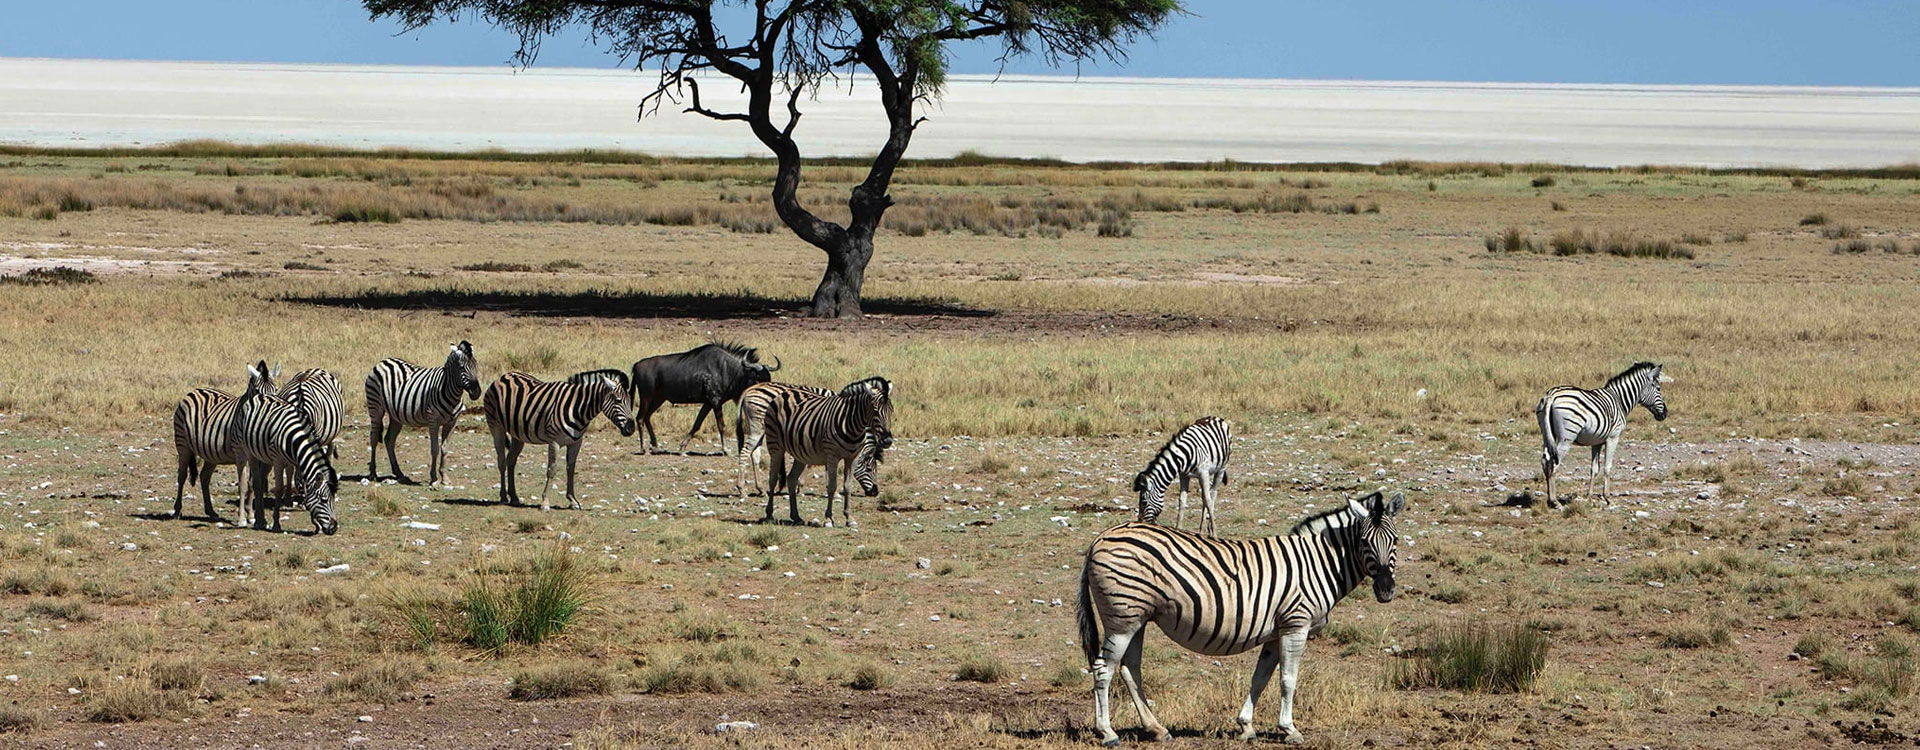 16 Day Namibia Safari - Etosha National Park, Sossusvlei